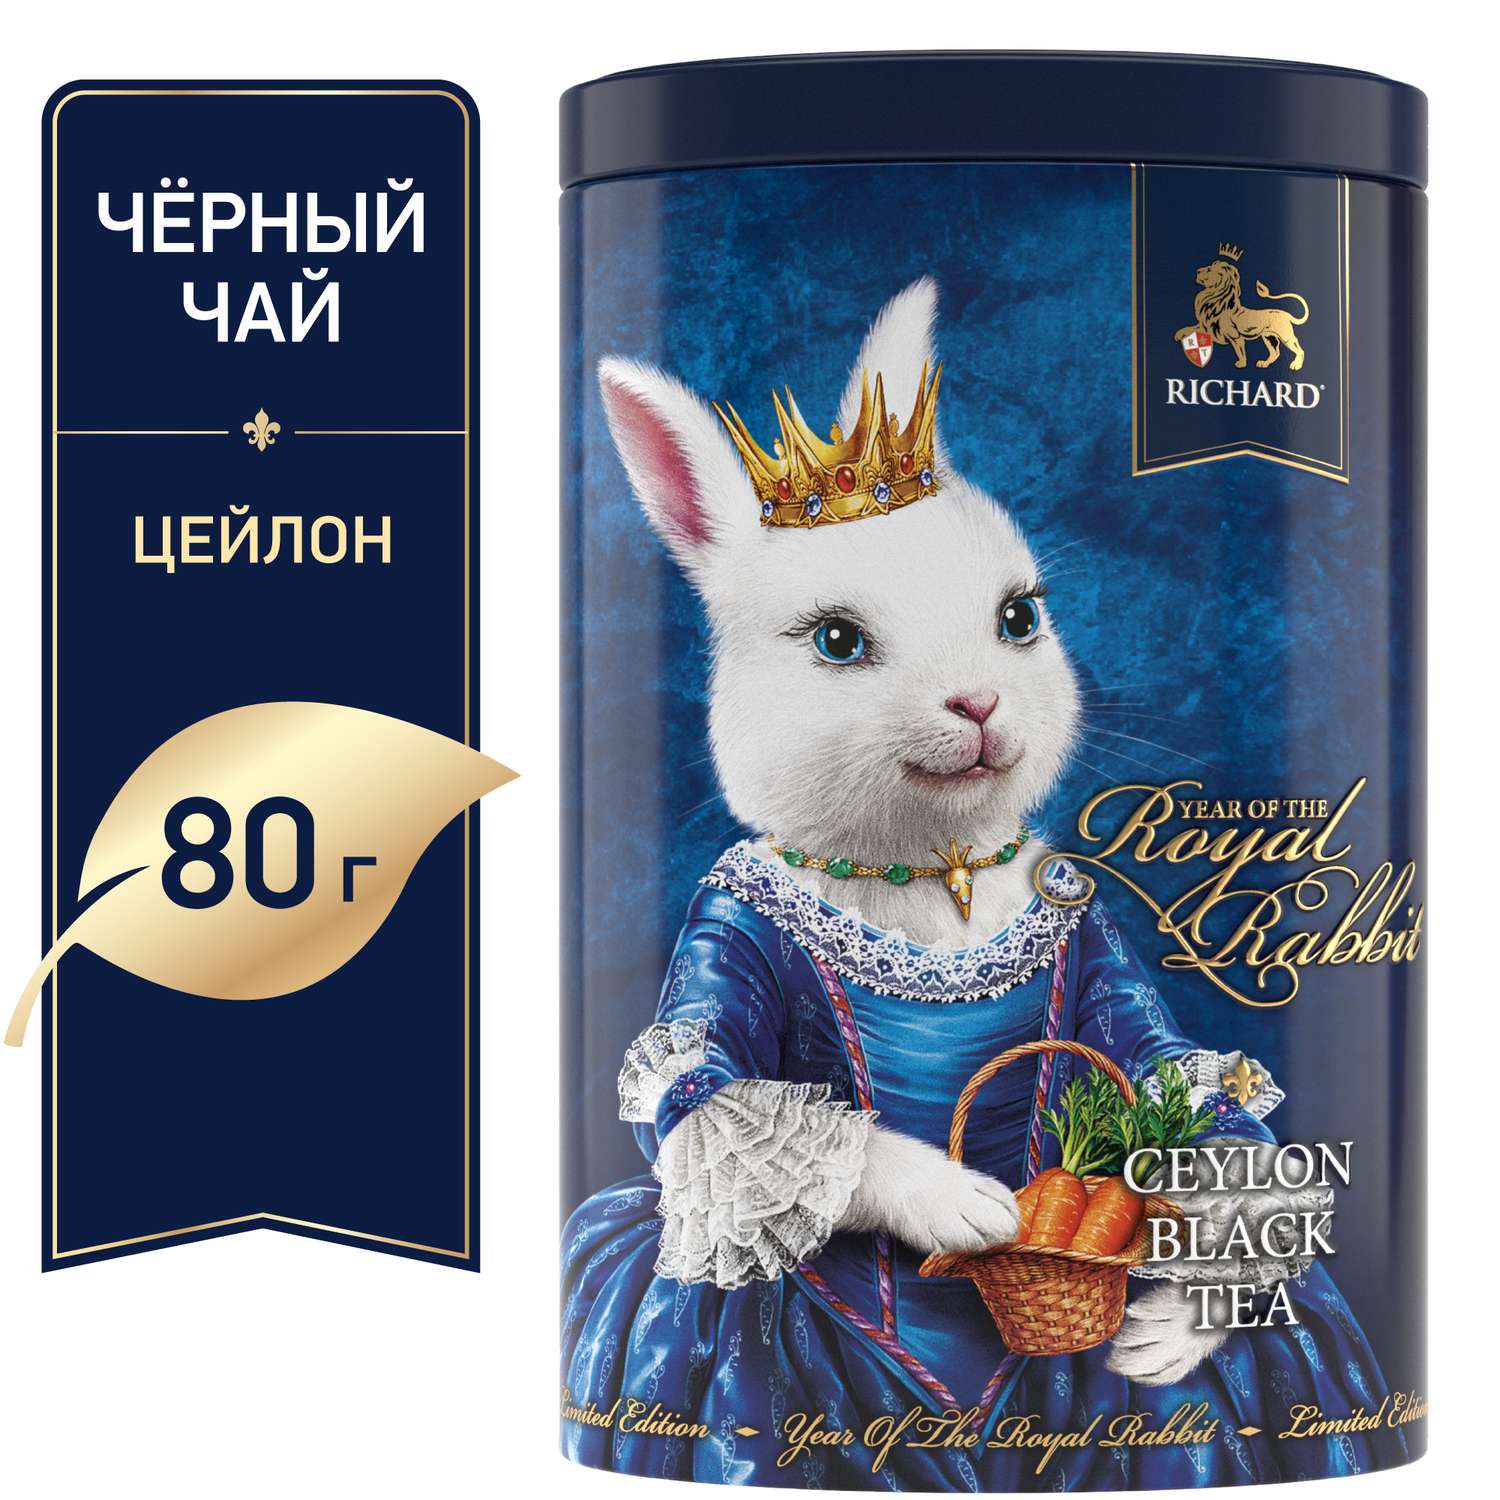 Чай черный крупнолистовой Richard Year of the Royal Rabbit с символом нового года принцесса 80 гр - фото 2